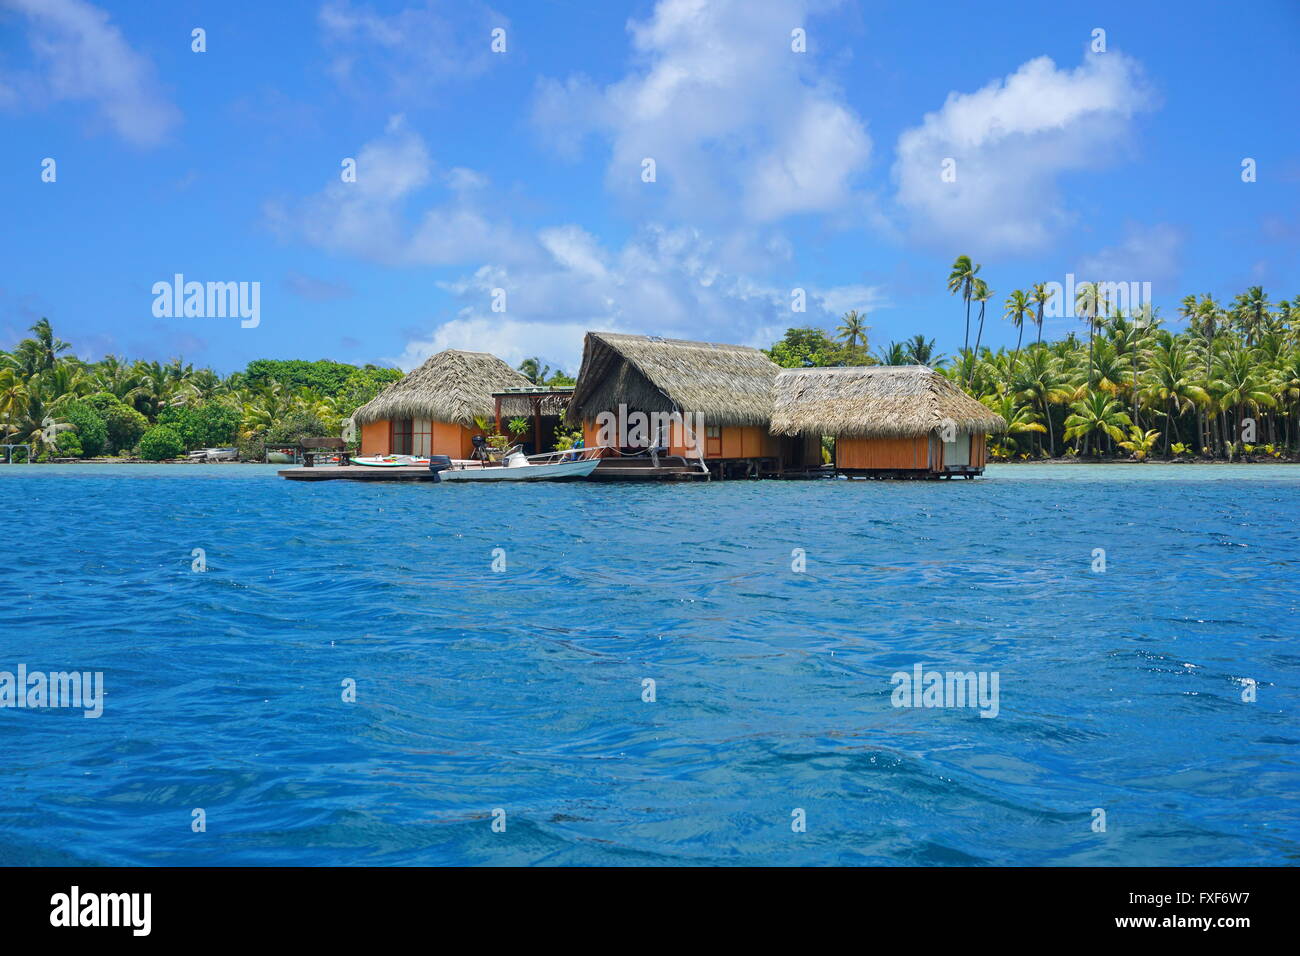 Casa tropicale con tetto di paglia su acqua con riva di un isolotto in background, Huahine isola, oceano pacifico, Polinesia Francese Foto Stock